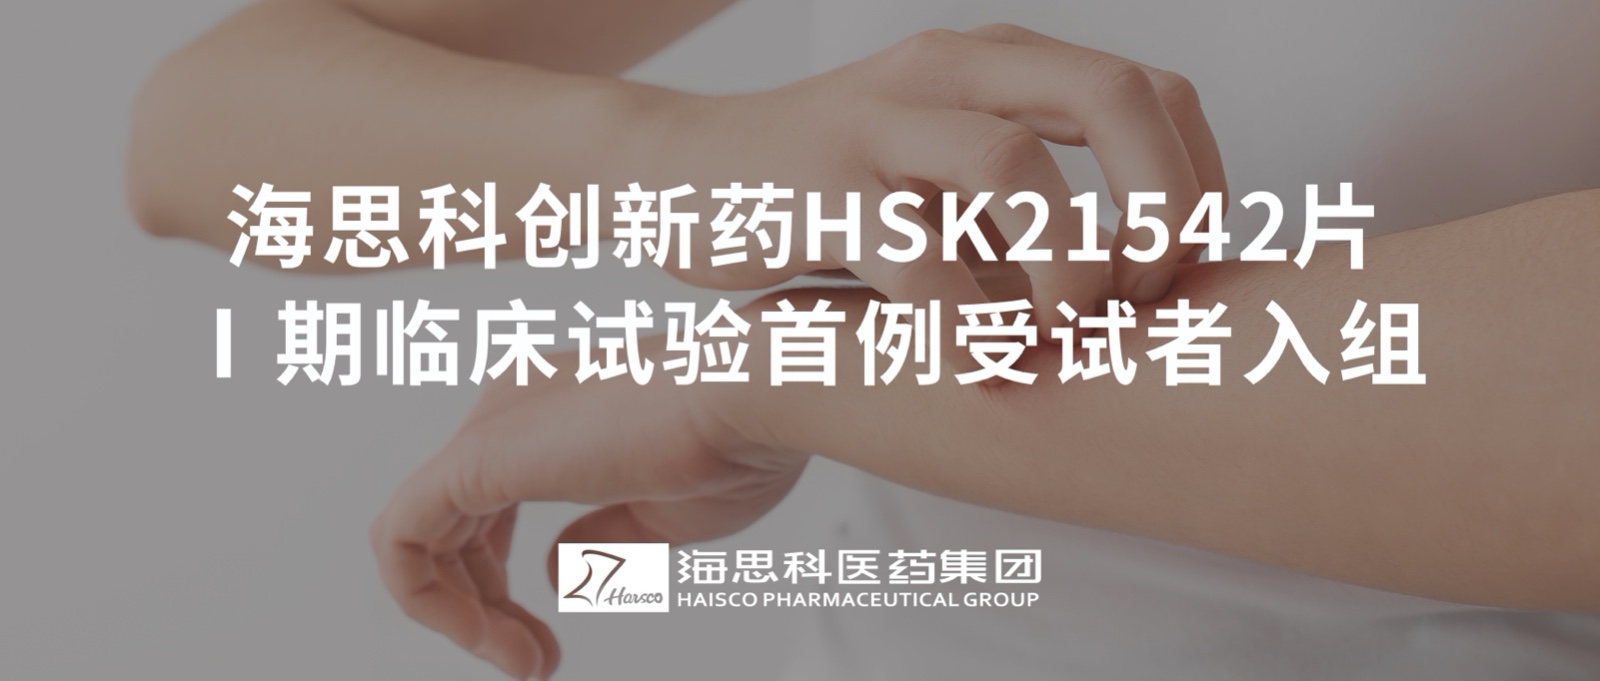 必赢网址bwi437创新药HSK21542片Ⅰ期临床试验首例受试者入组